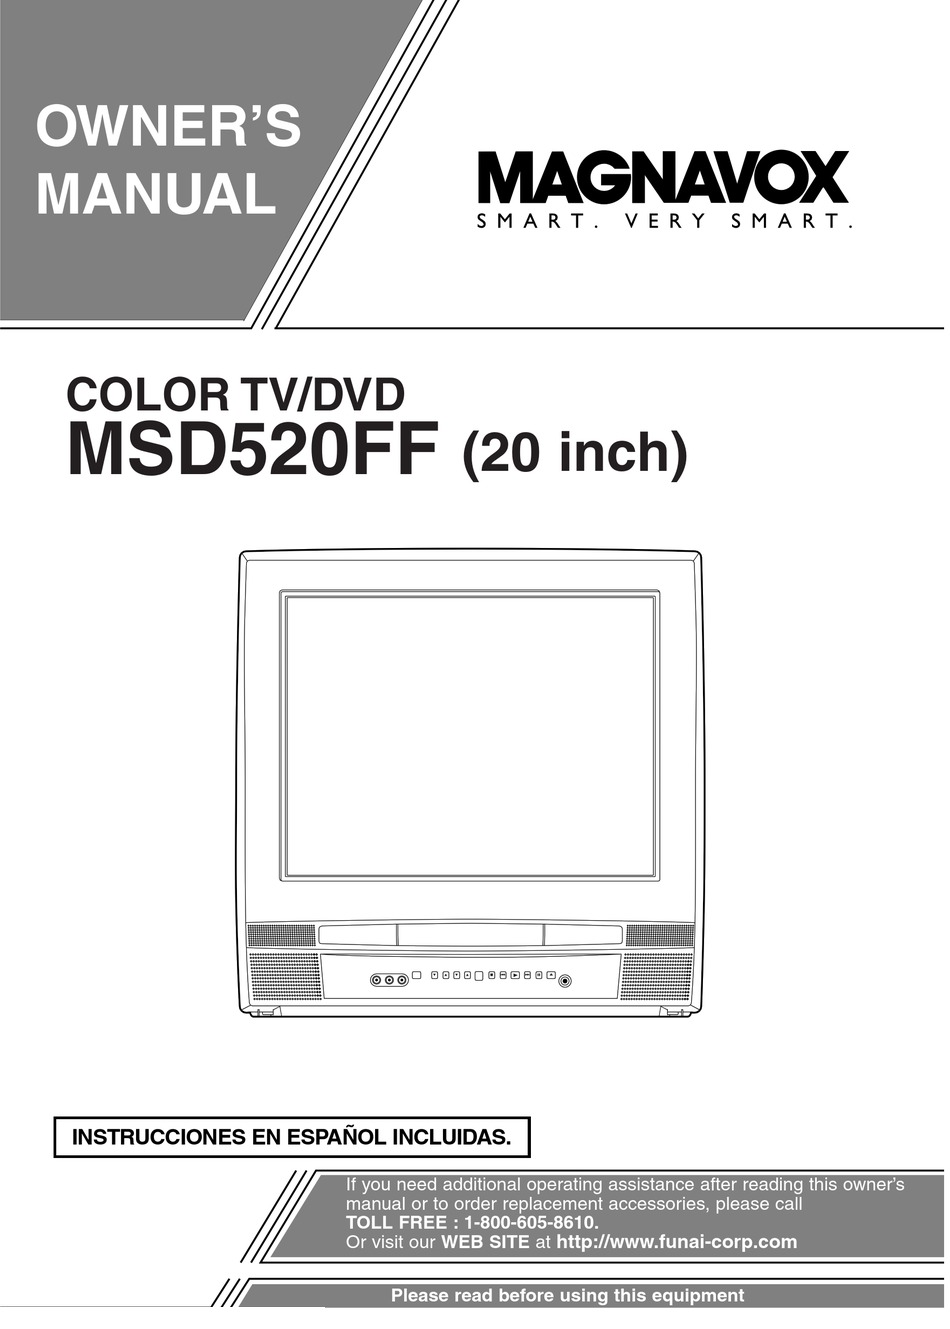 MAGNAVOX MSD520FF OWNER'S MANUAL Pdf Download | ManualsLib